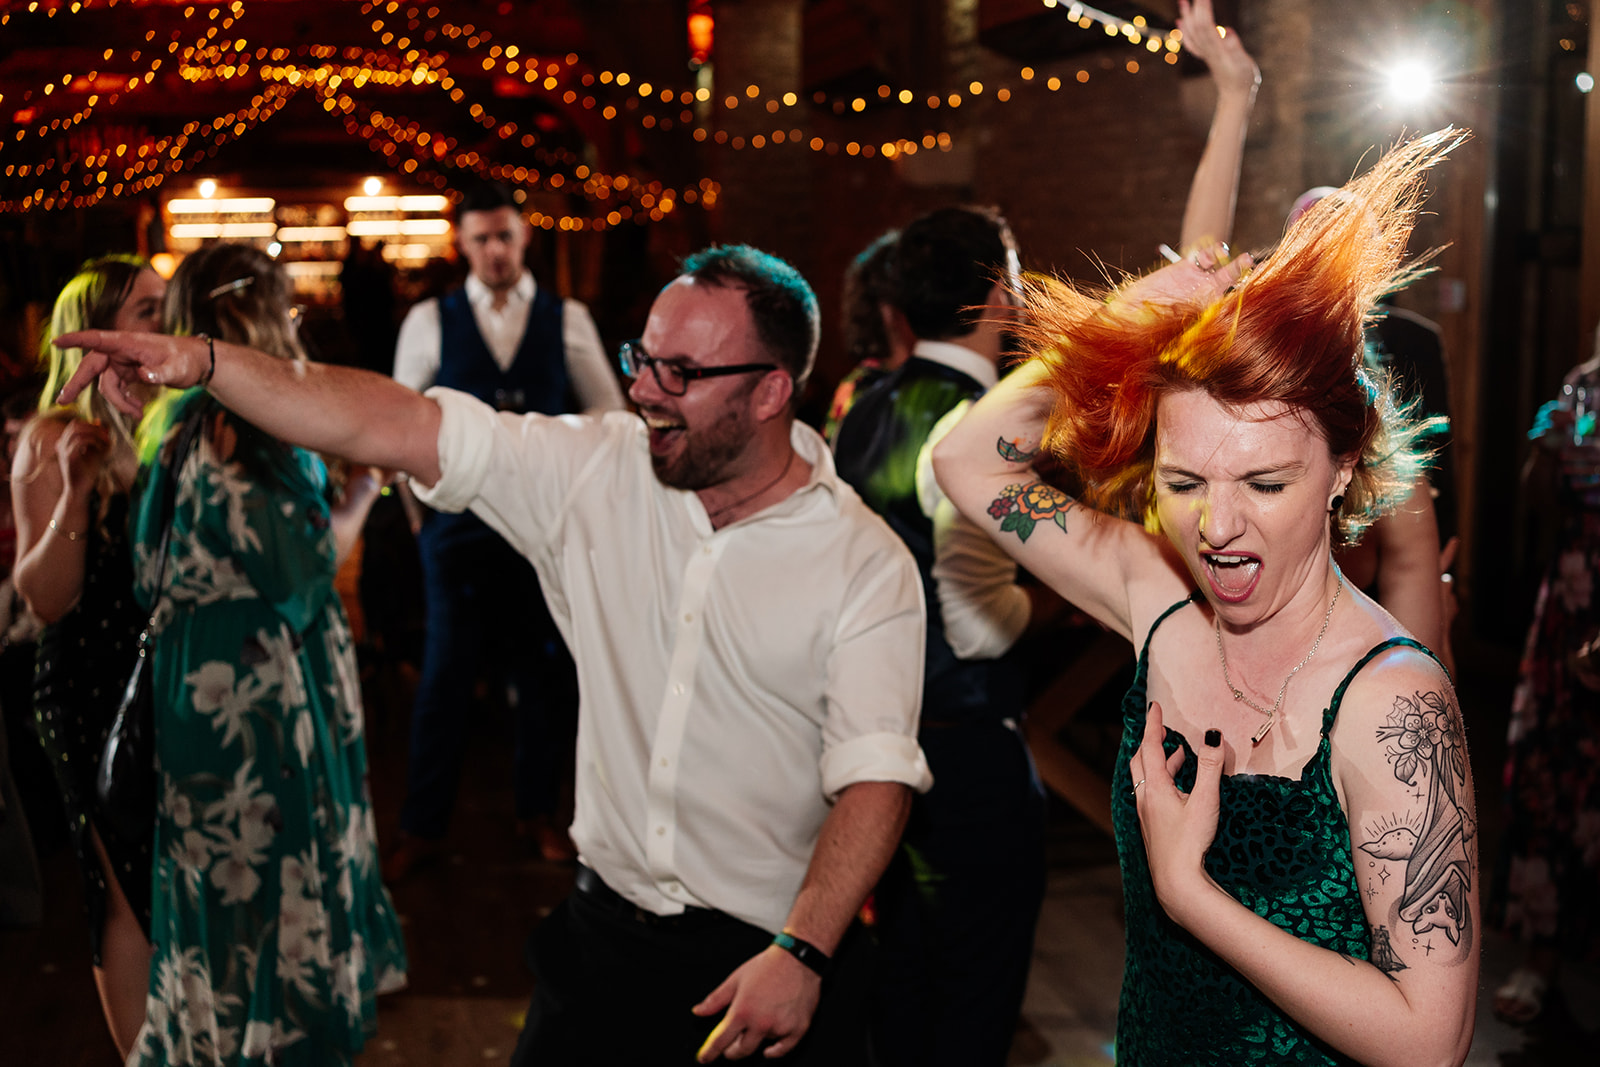 Crazy dance floor photo of wedding guests 